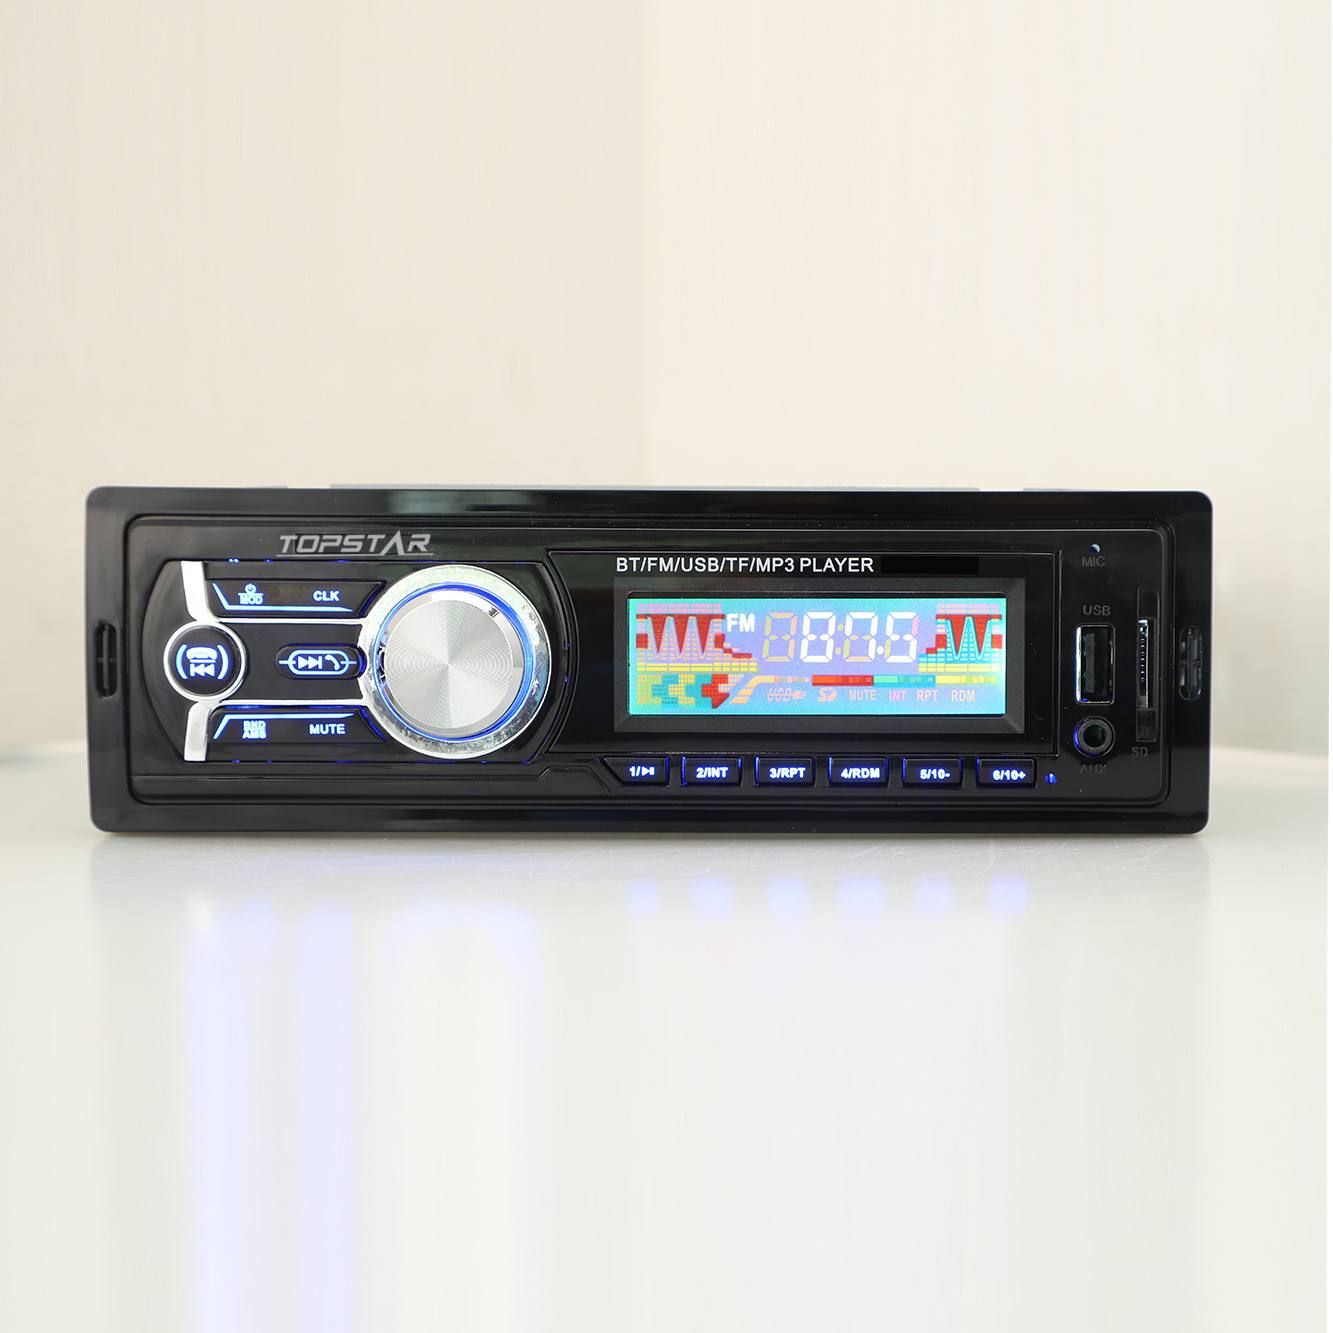 FM الارسال الصوت سيارة ستيريو سيارة مشغل فيديو MP3 للسيارة اكسسوارات السيارات FM الارسال الصوت واحد الدين سيارة مشغل MP3